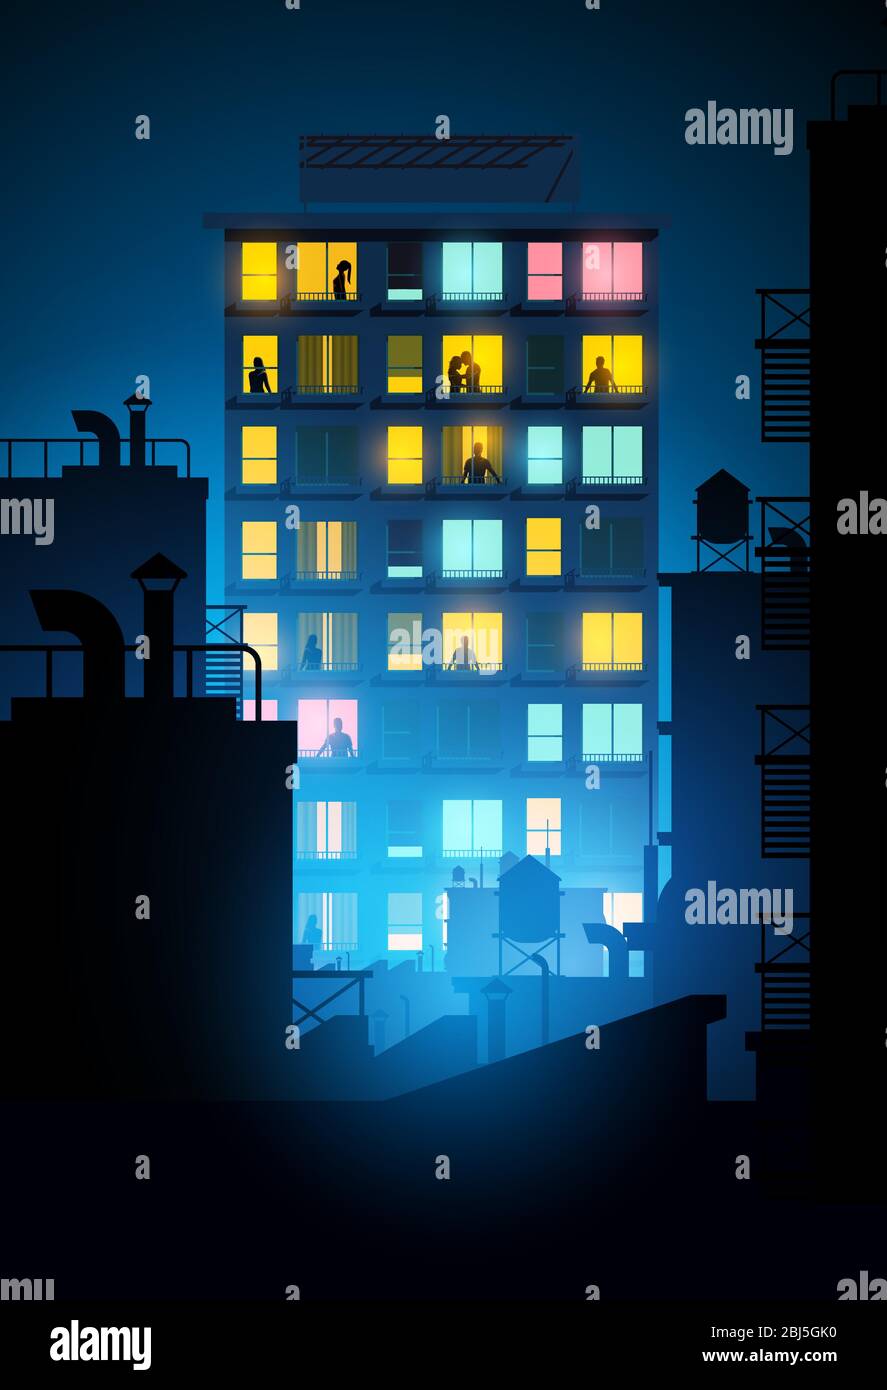 Ein großer Block von Wohnungen mit Menschen im Inneren Blick aus den Fenstern in der Nacht. Vektorgrafik. Stock Vektor